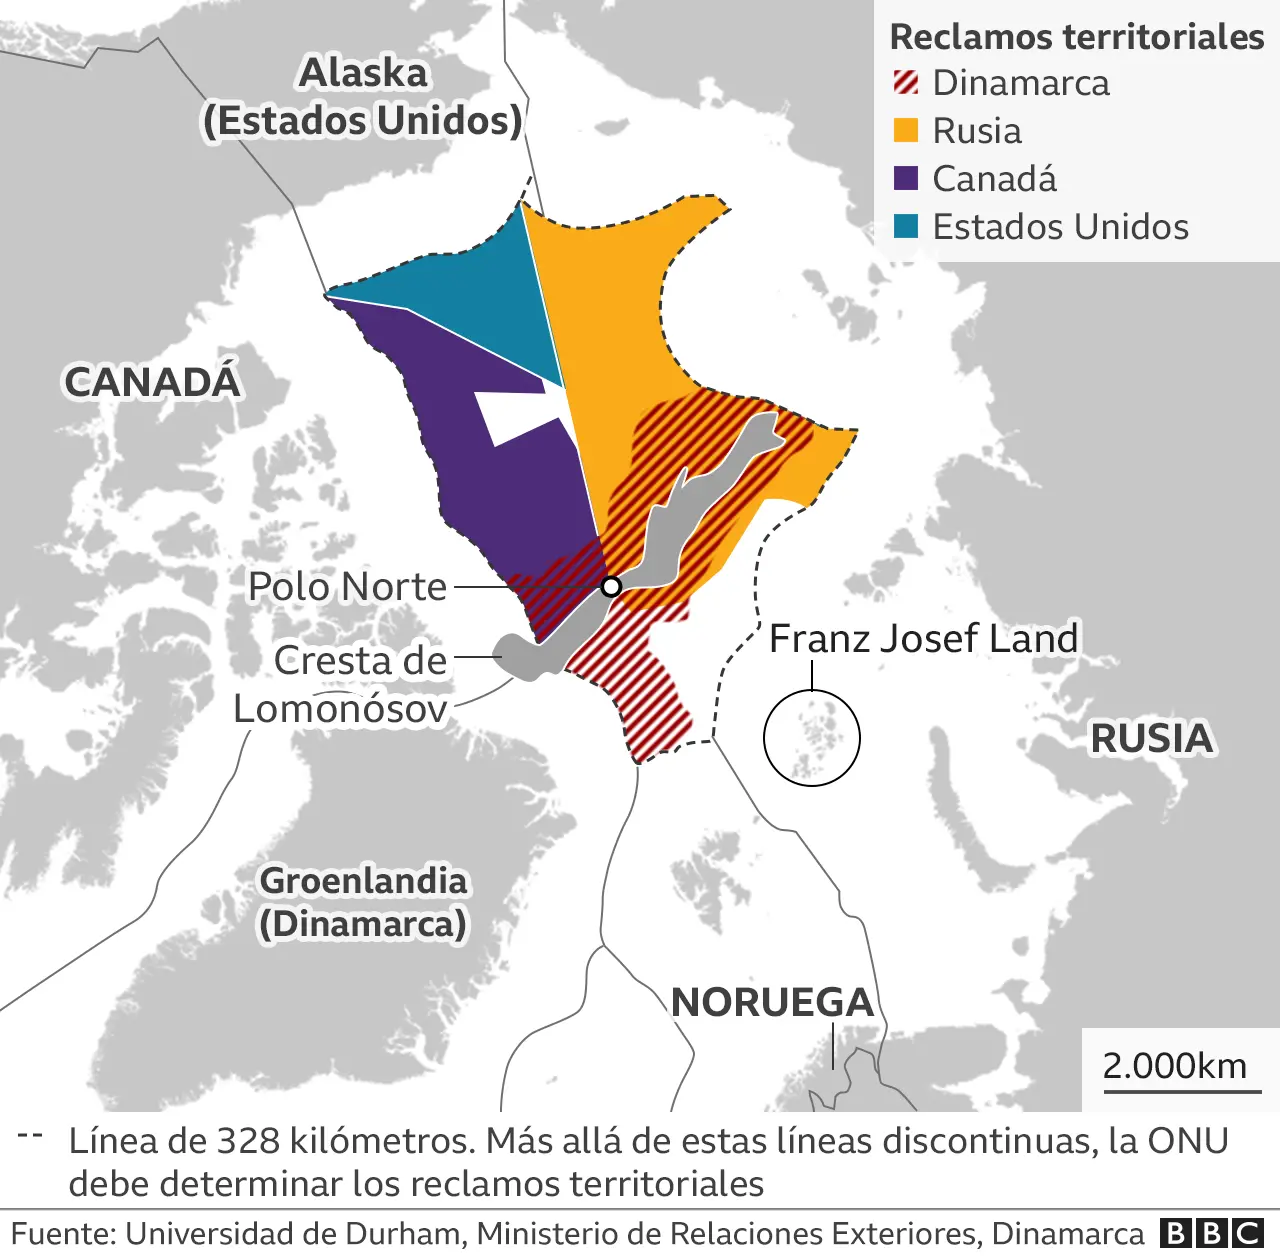 Ártico: La batalla por los recursos (petróleo, paso del noreste...). Noruega, Rusia, EEUU, Canadá, Dinamarca. - Página 2 _124358365_arctic_sea_oil_map_spanish_640_x2-nc.png